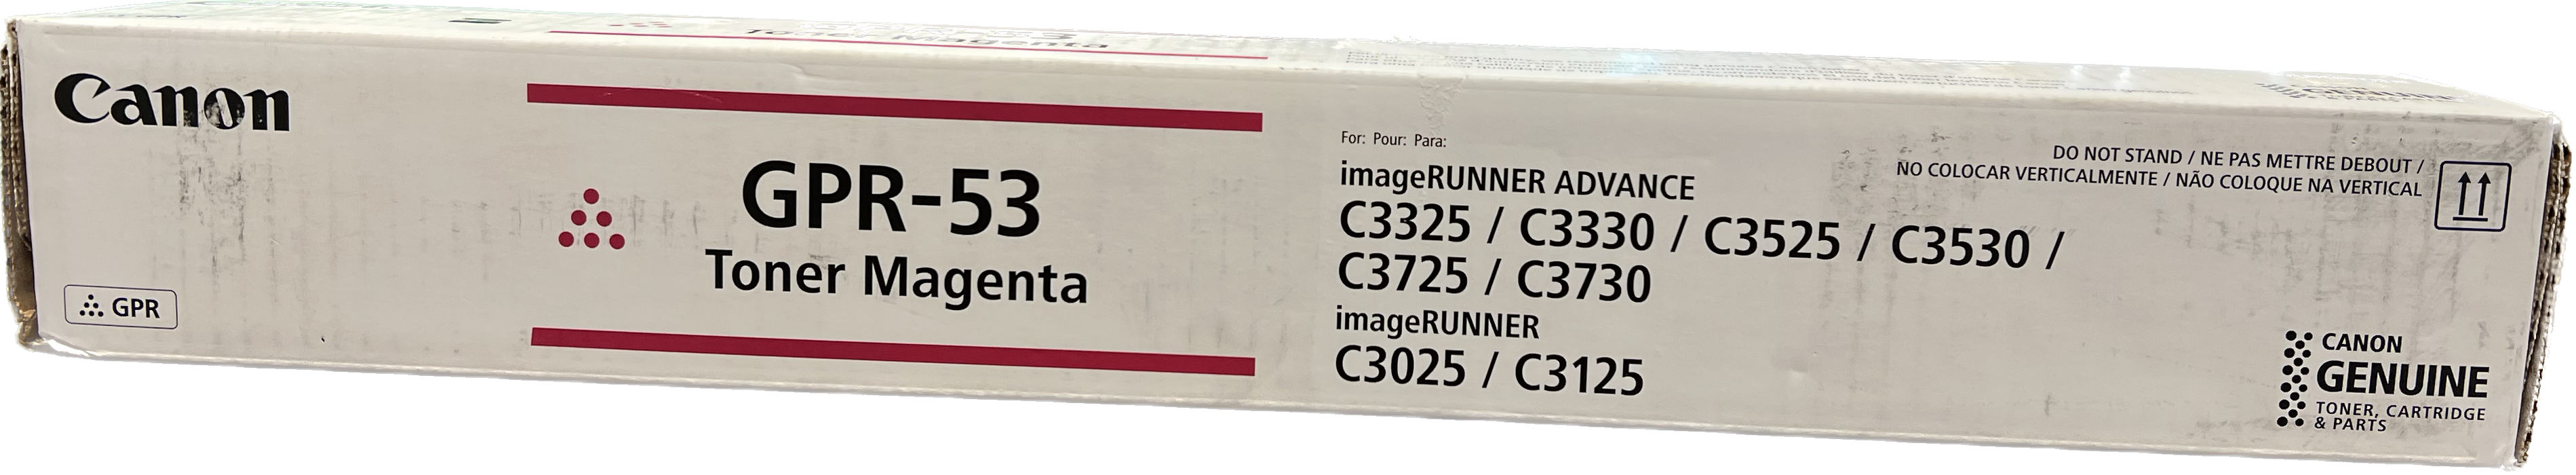 Genuine Canon Magenta Toner Cartridge | 8526B003 | GPR-53M